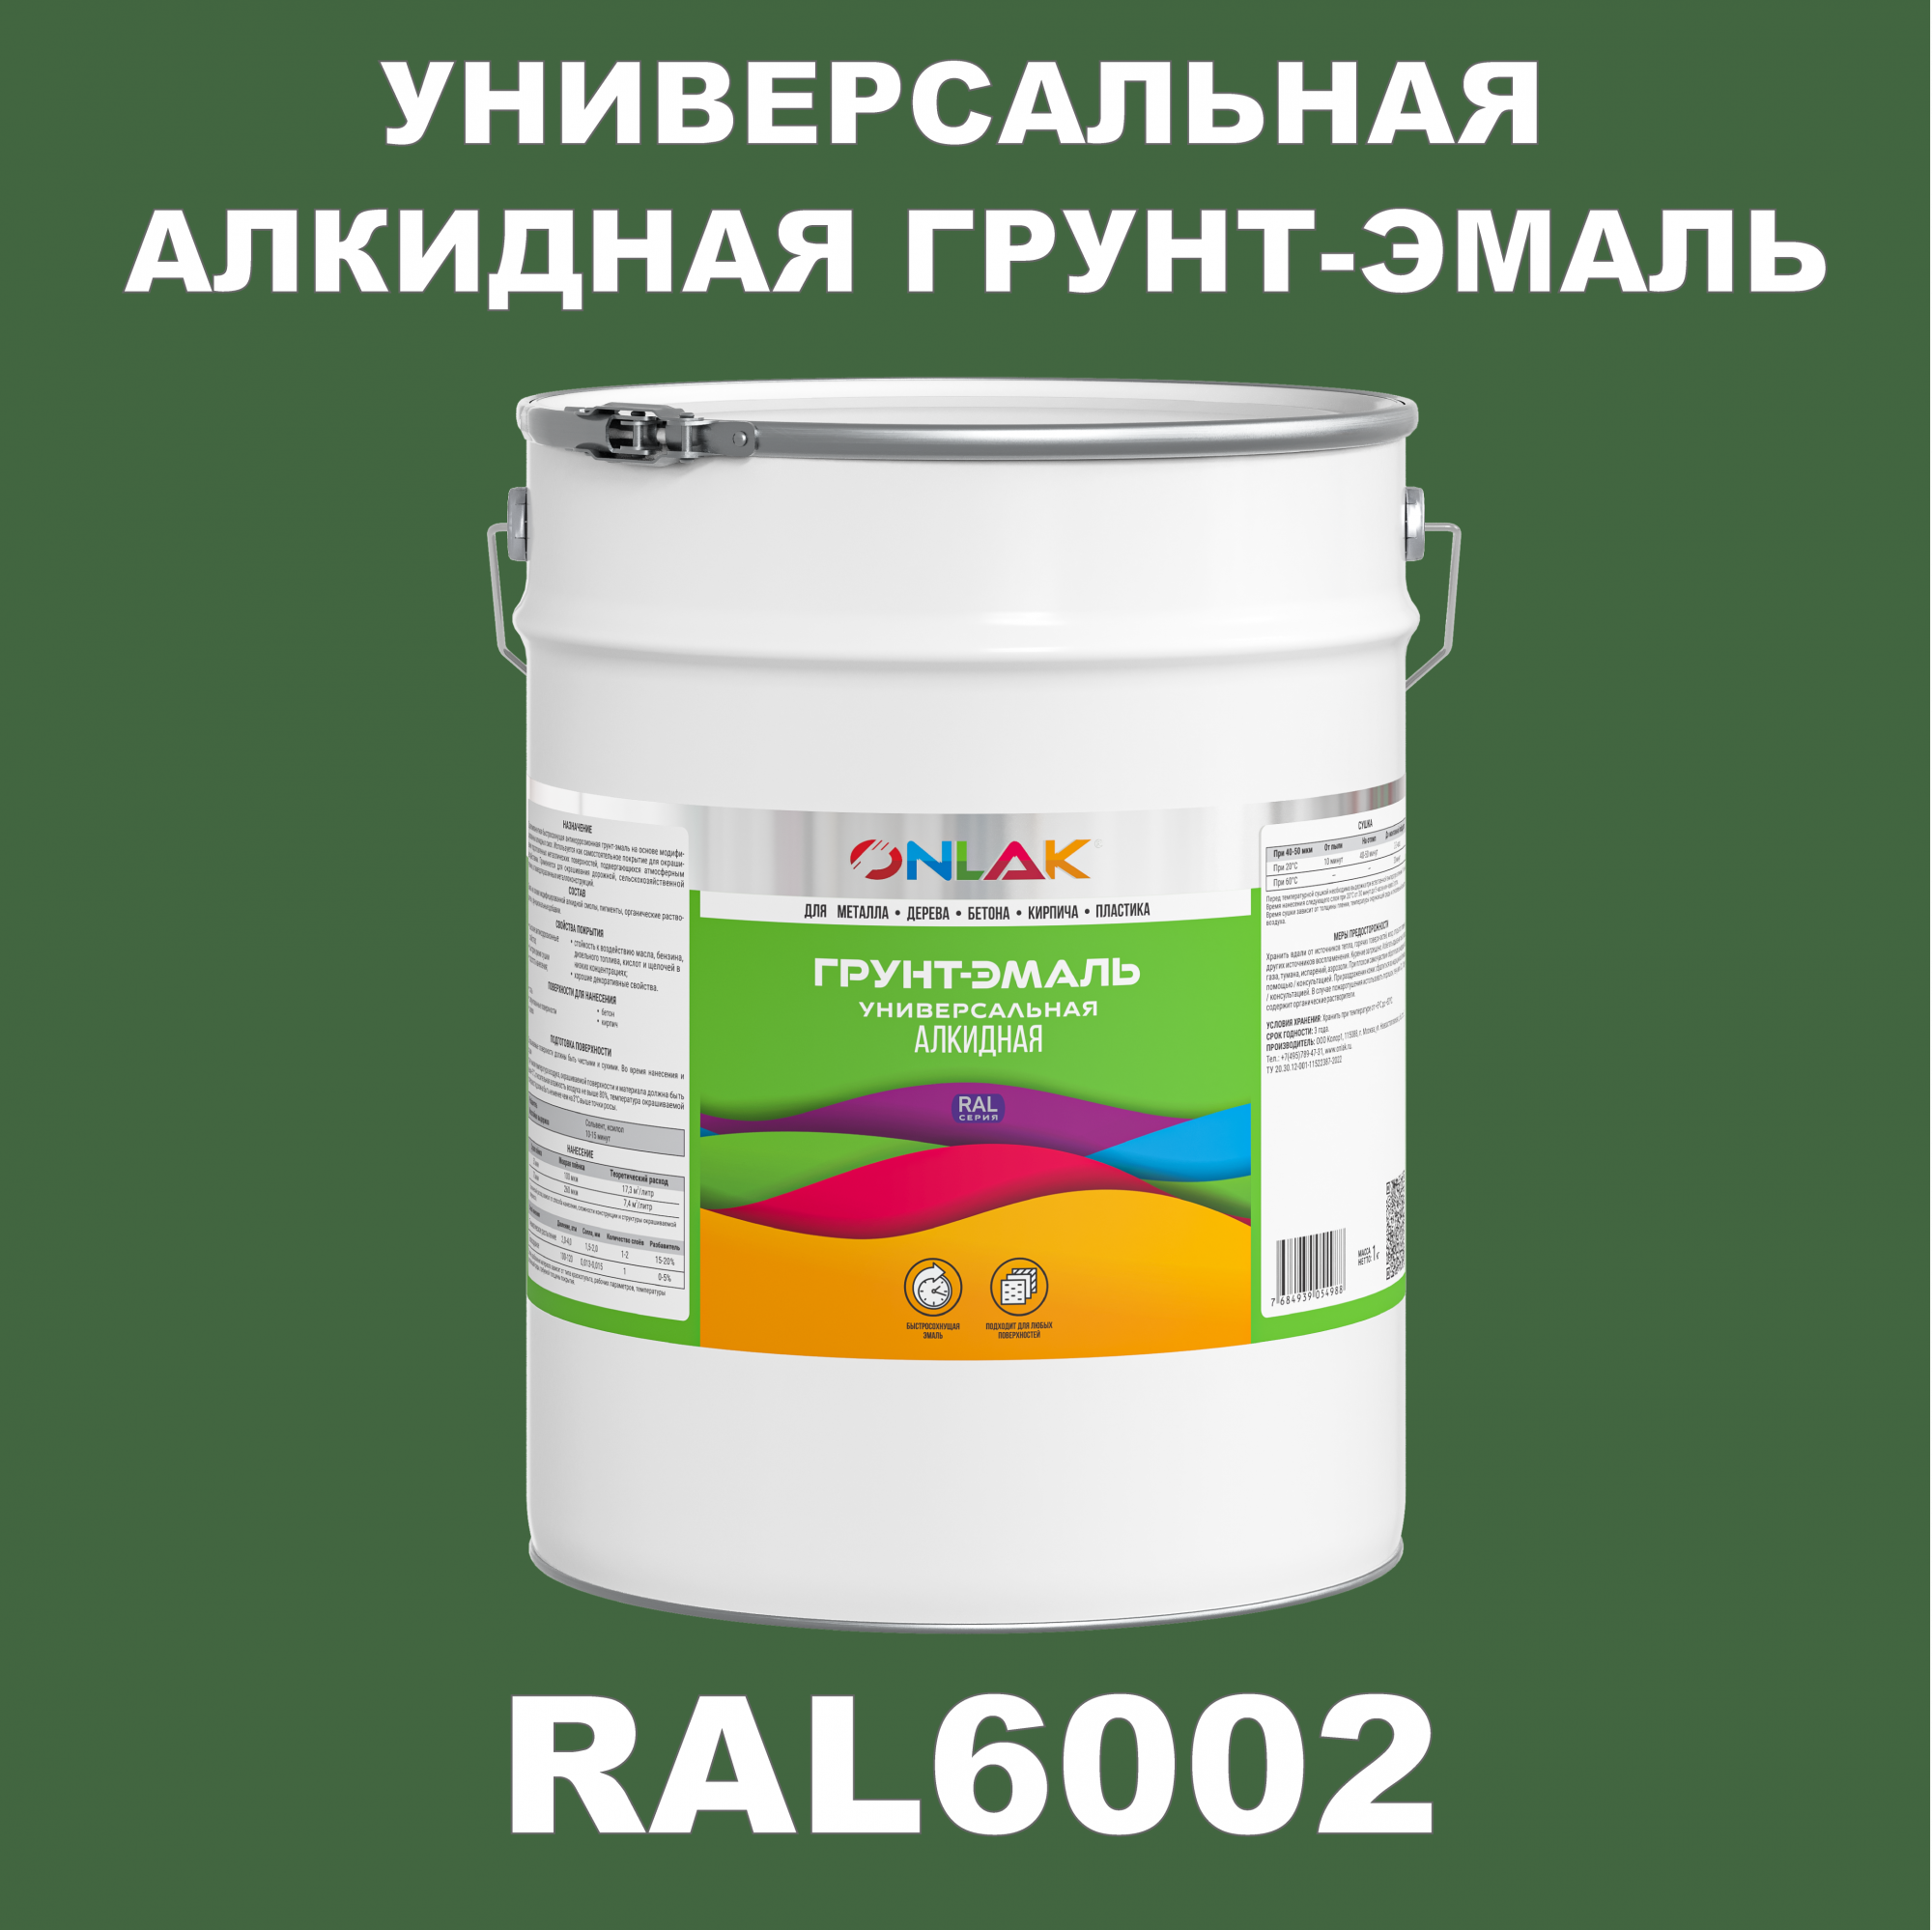 Грунт-эмаль ONLAK 1К RAL6002 антикоррозионная алкидная по металлу по ржавчине 20 кг грунт эмаль yollo по ржавчине алкидная белая 0 9 кг